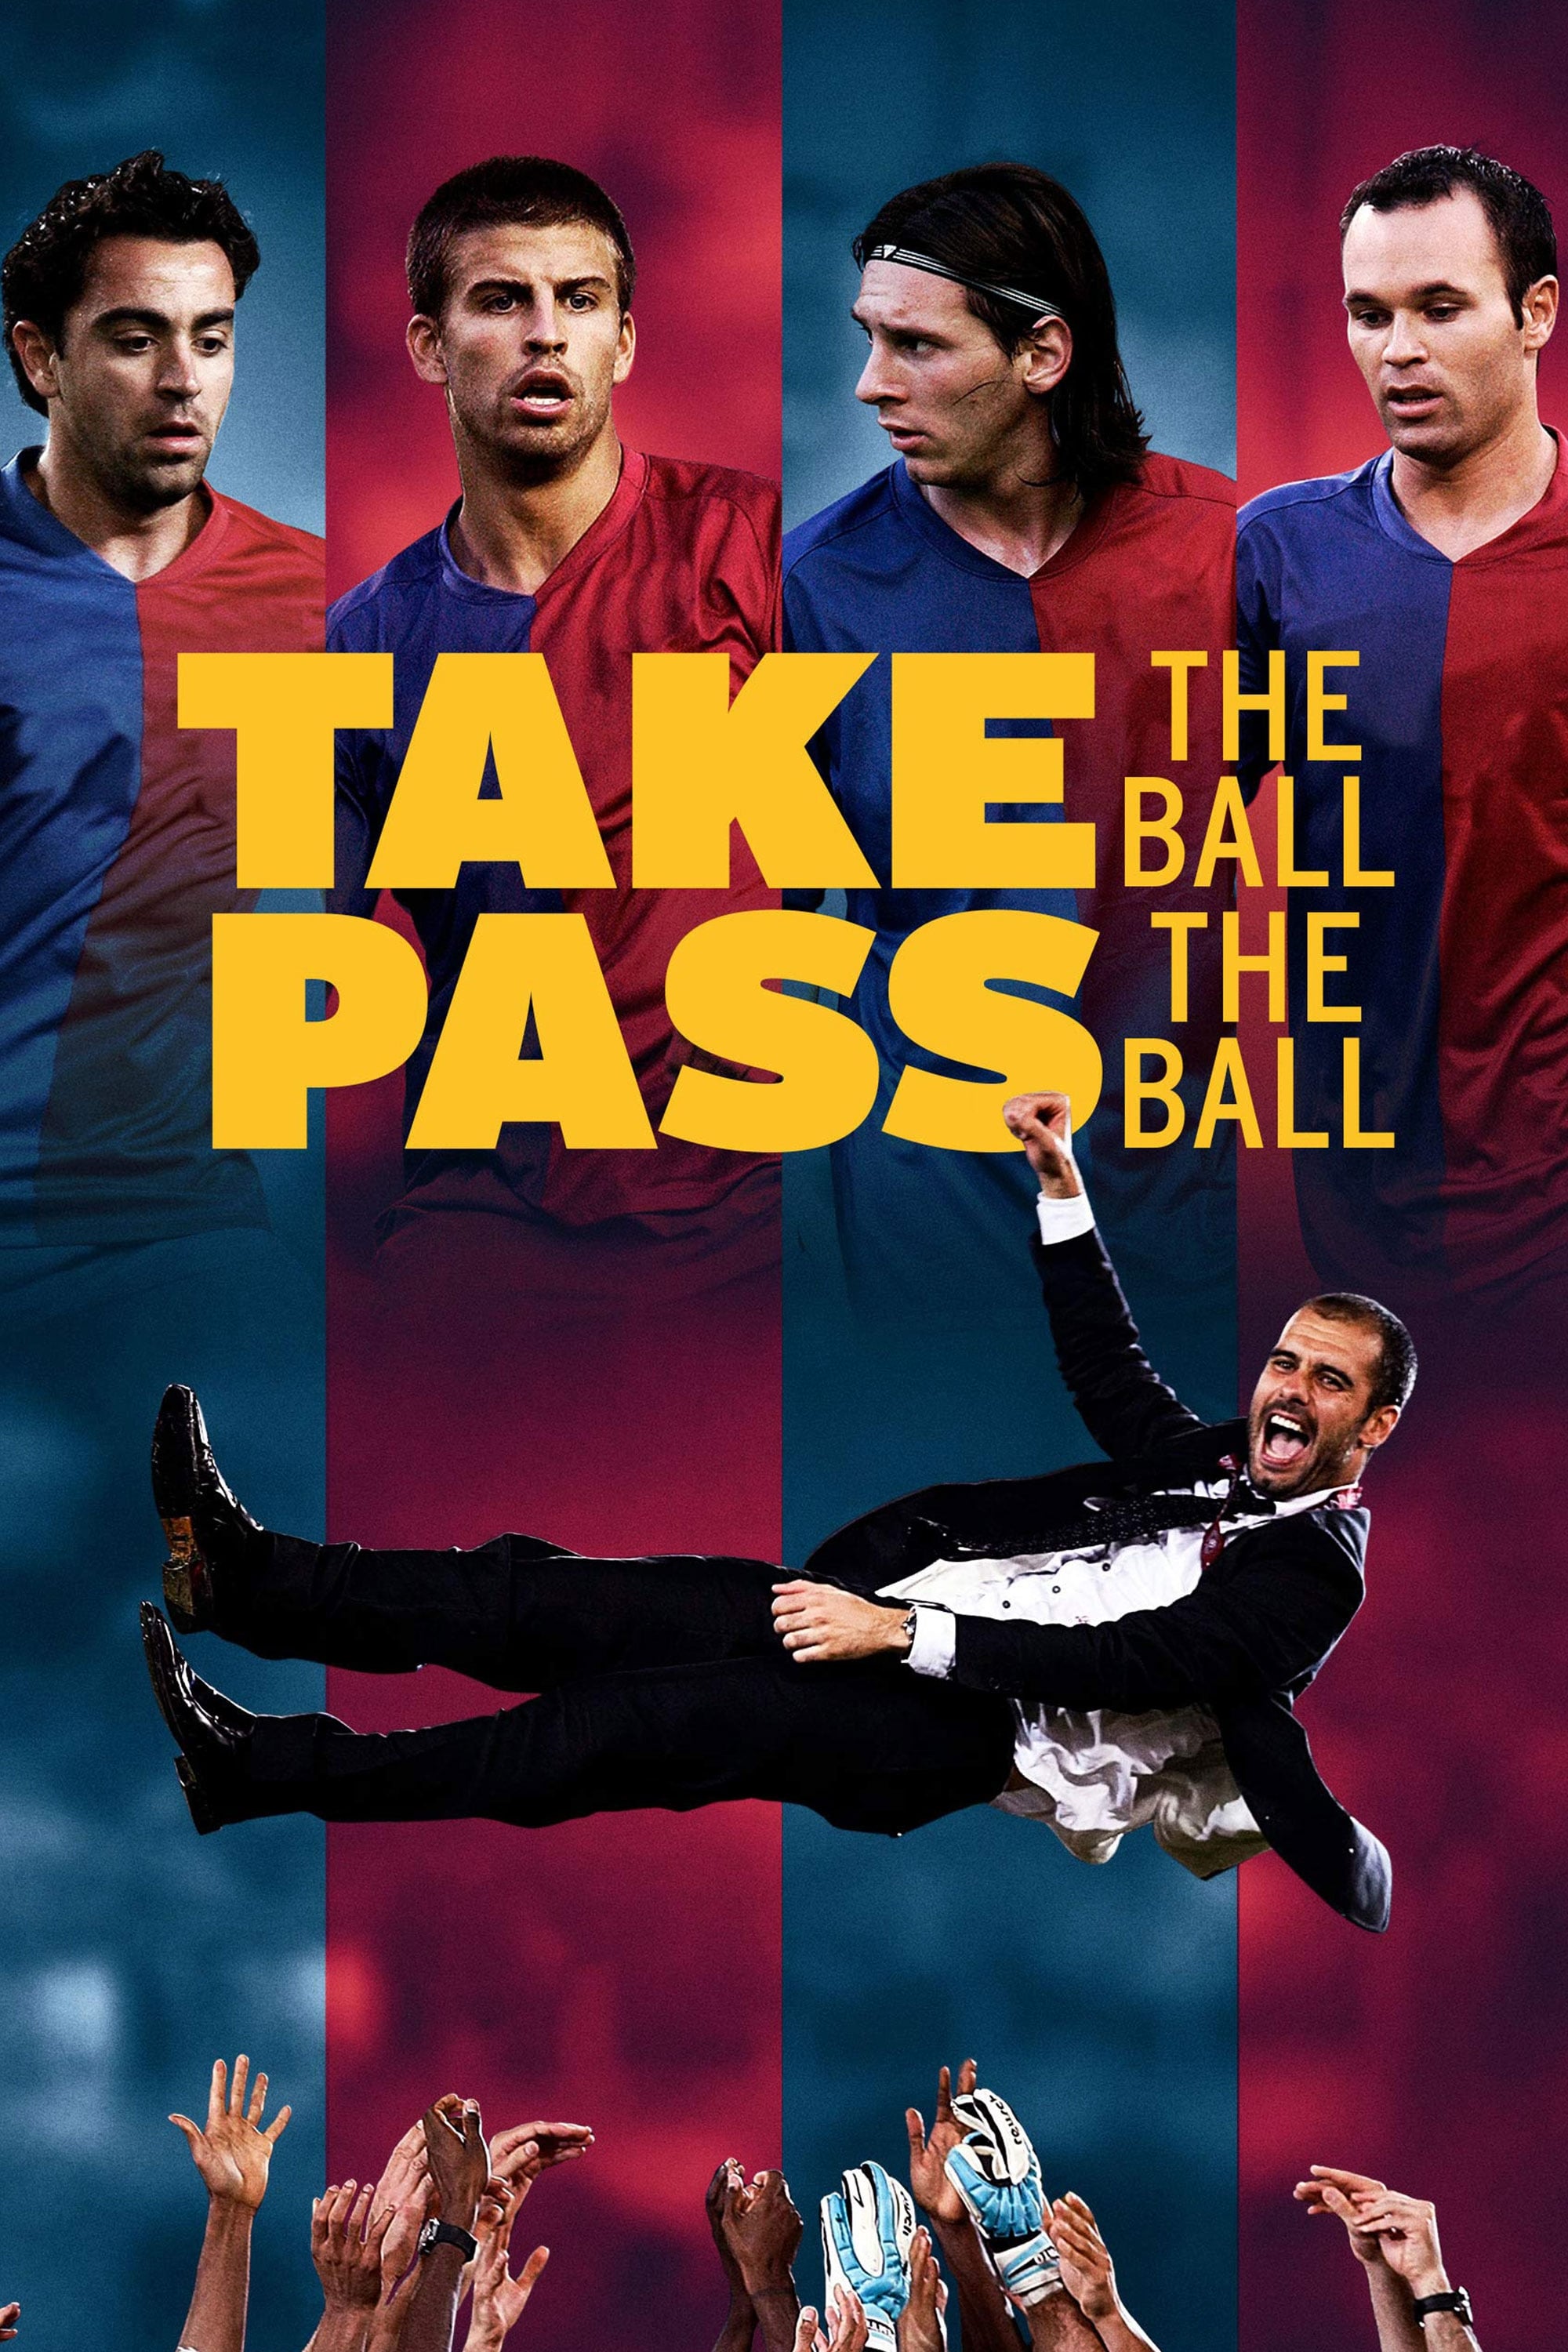 Barcelona - Đội Bóng Vĩ Đại (Take the Ball, Pass the Ball) [2018]